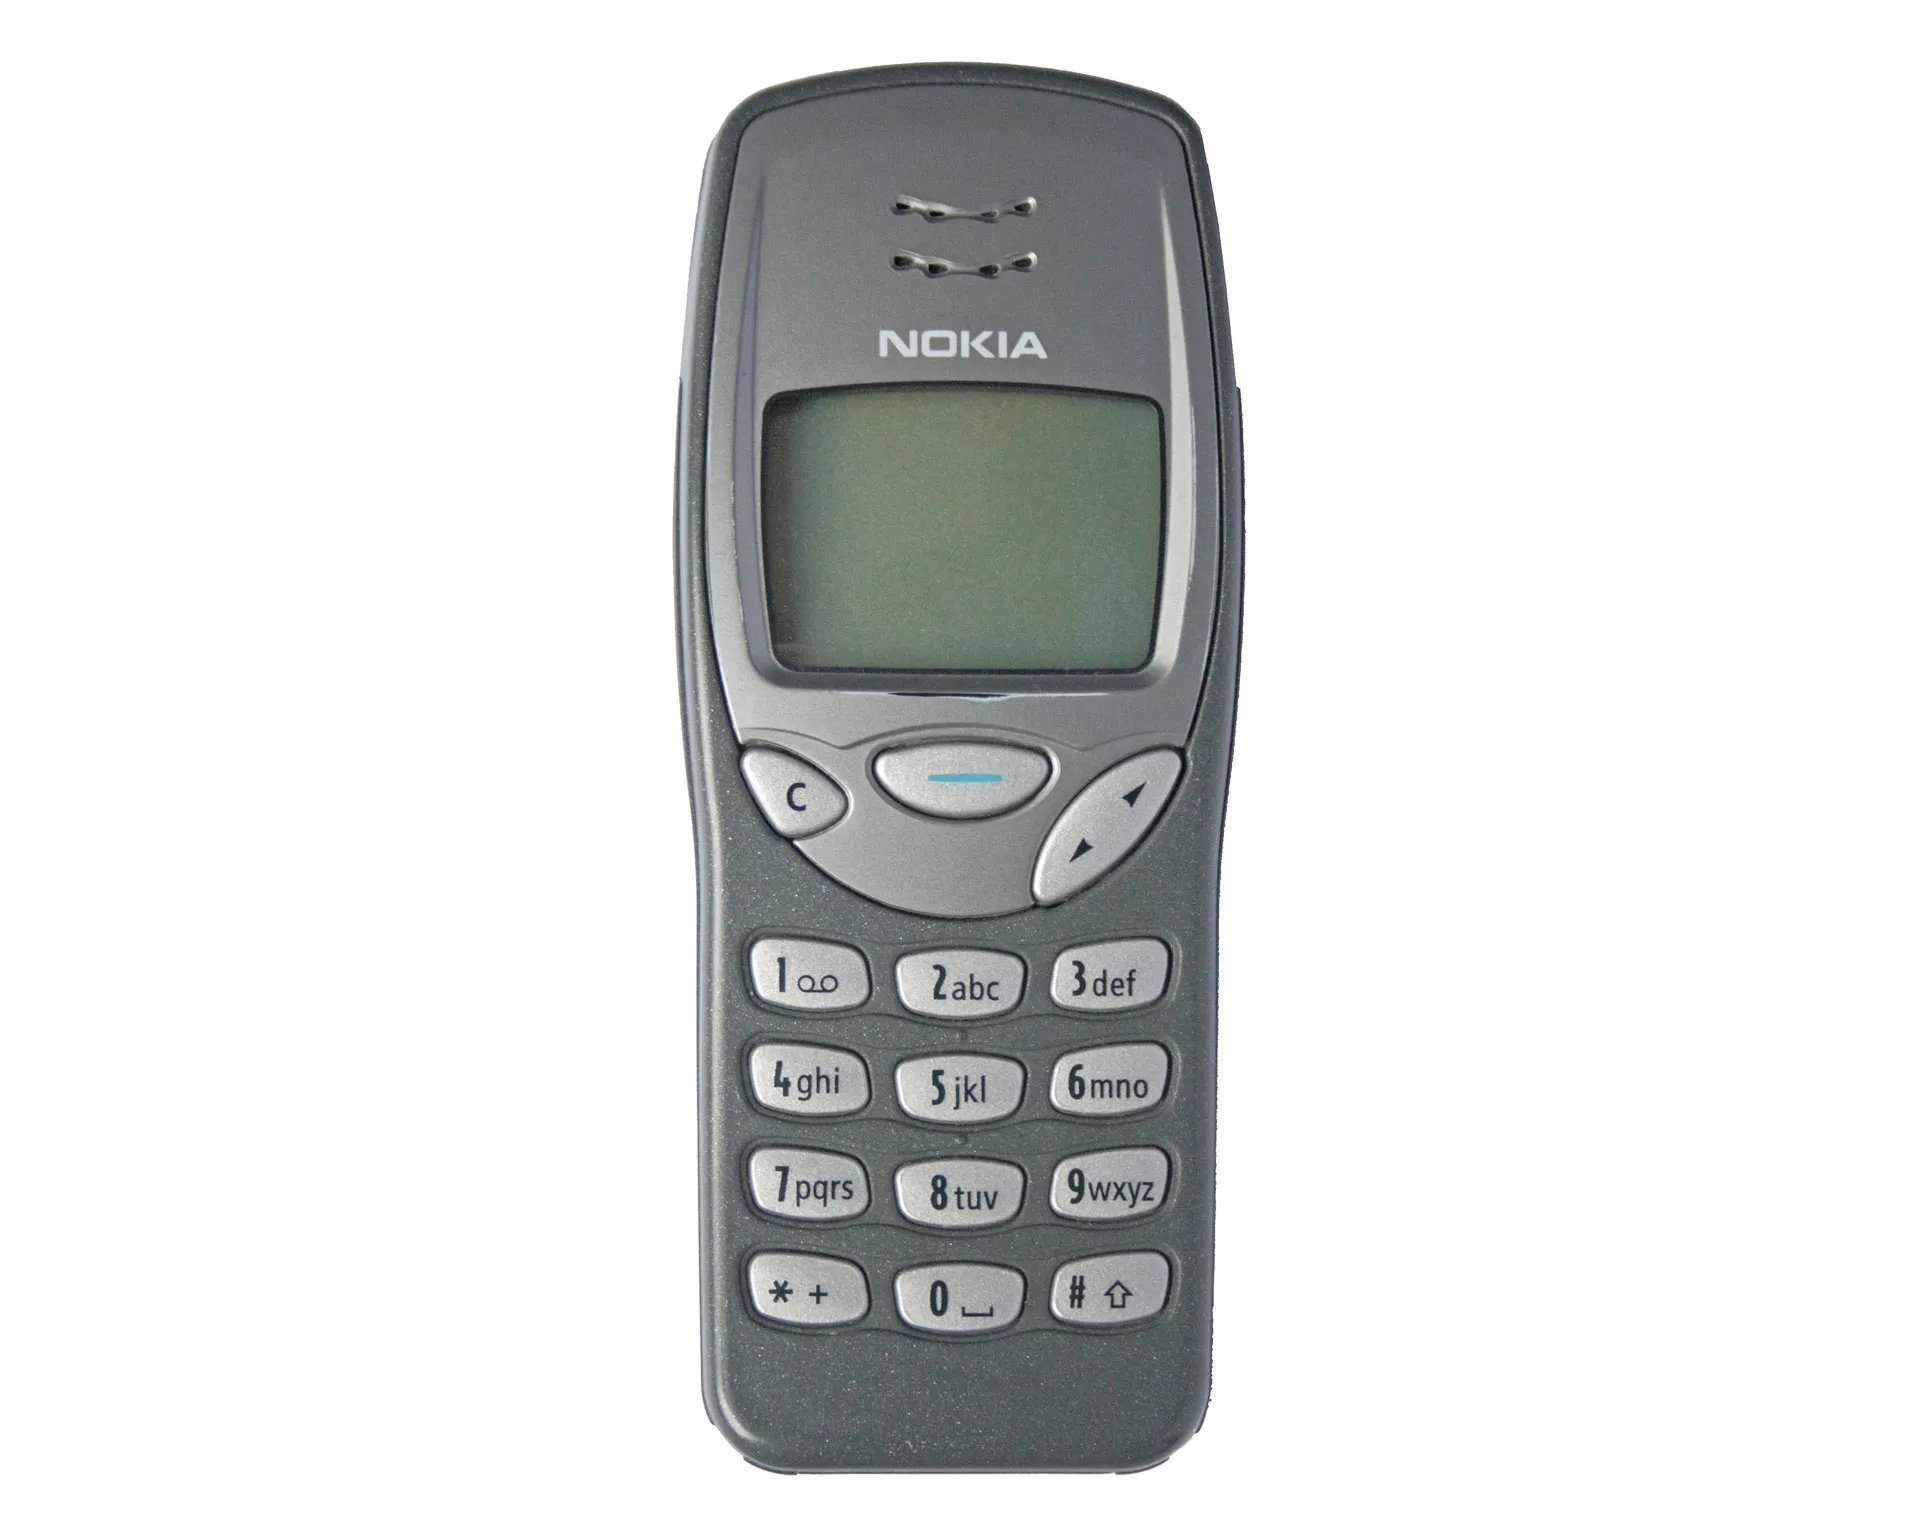 Nokia 3210, родом из 1999 года, внезапно обновляется